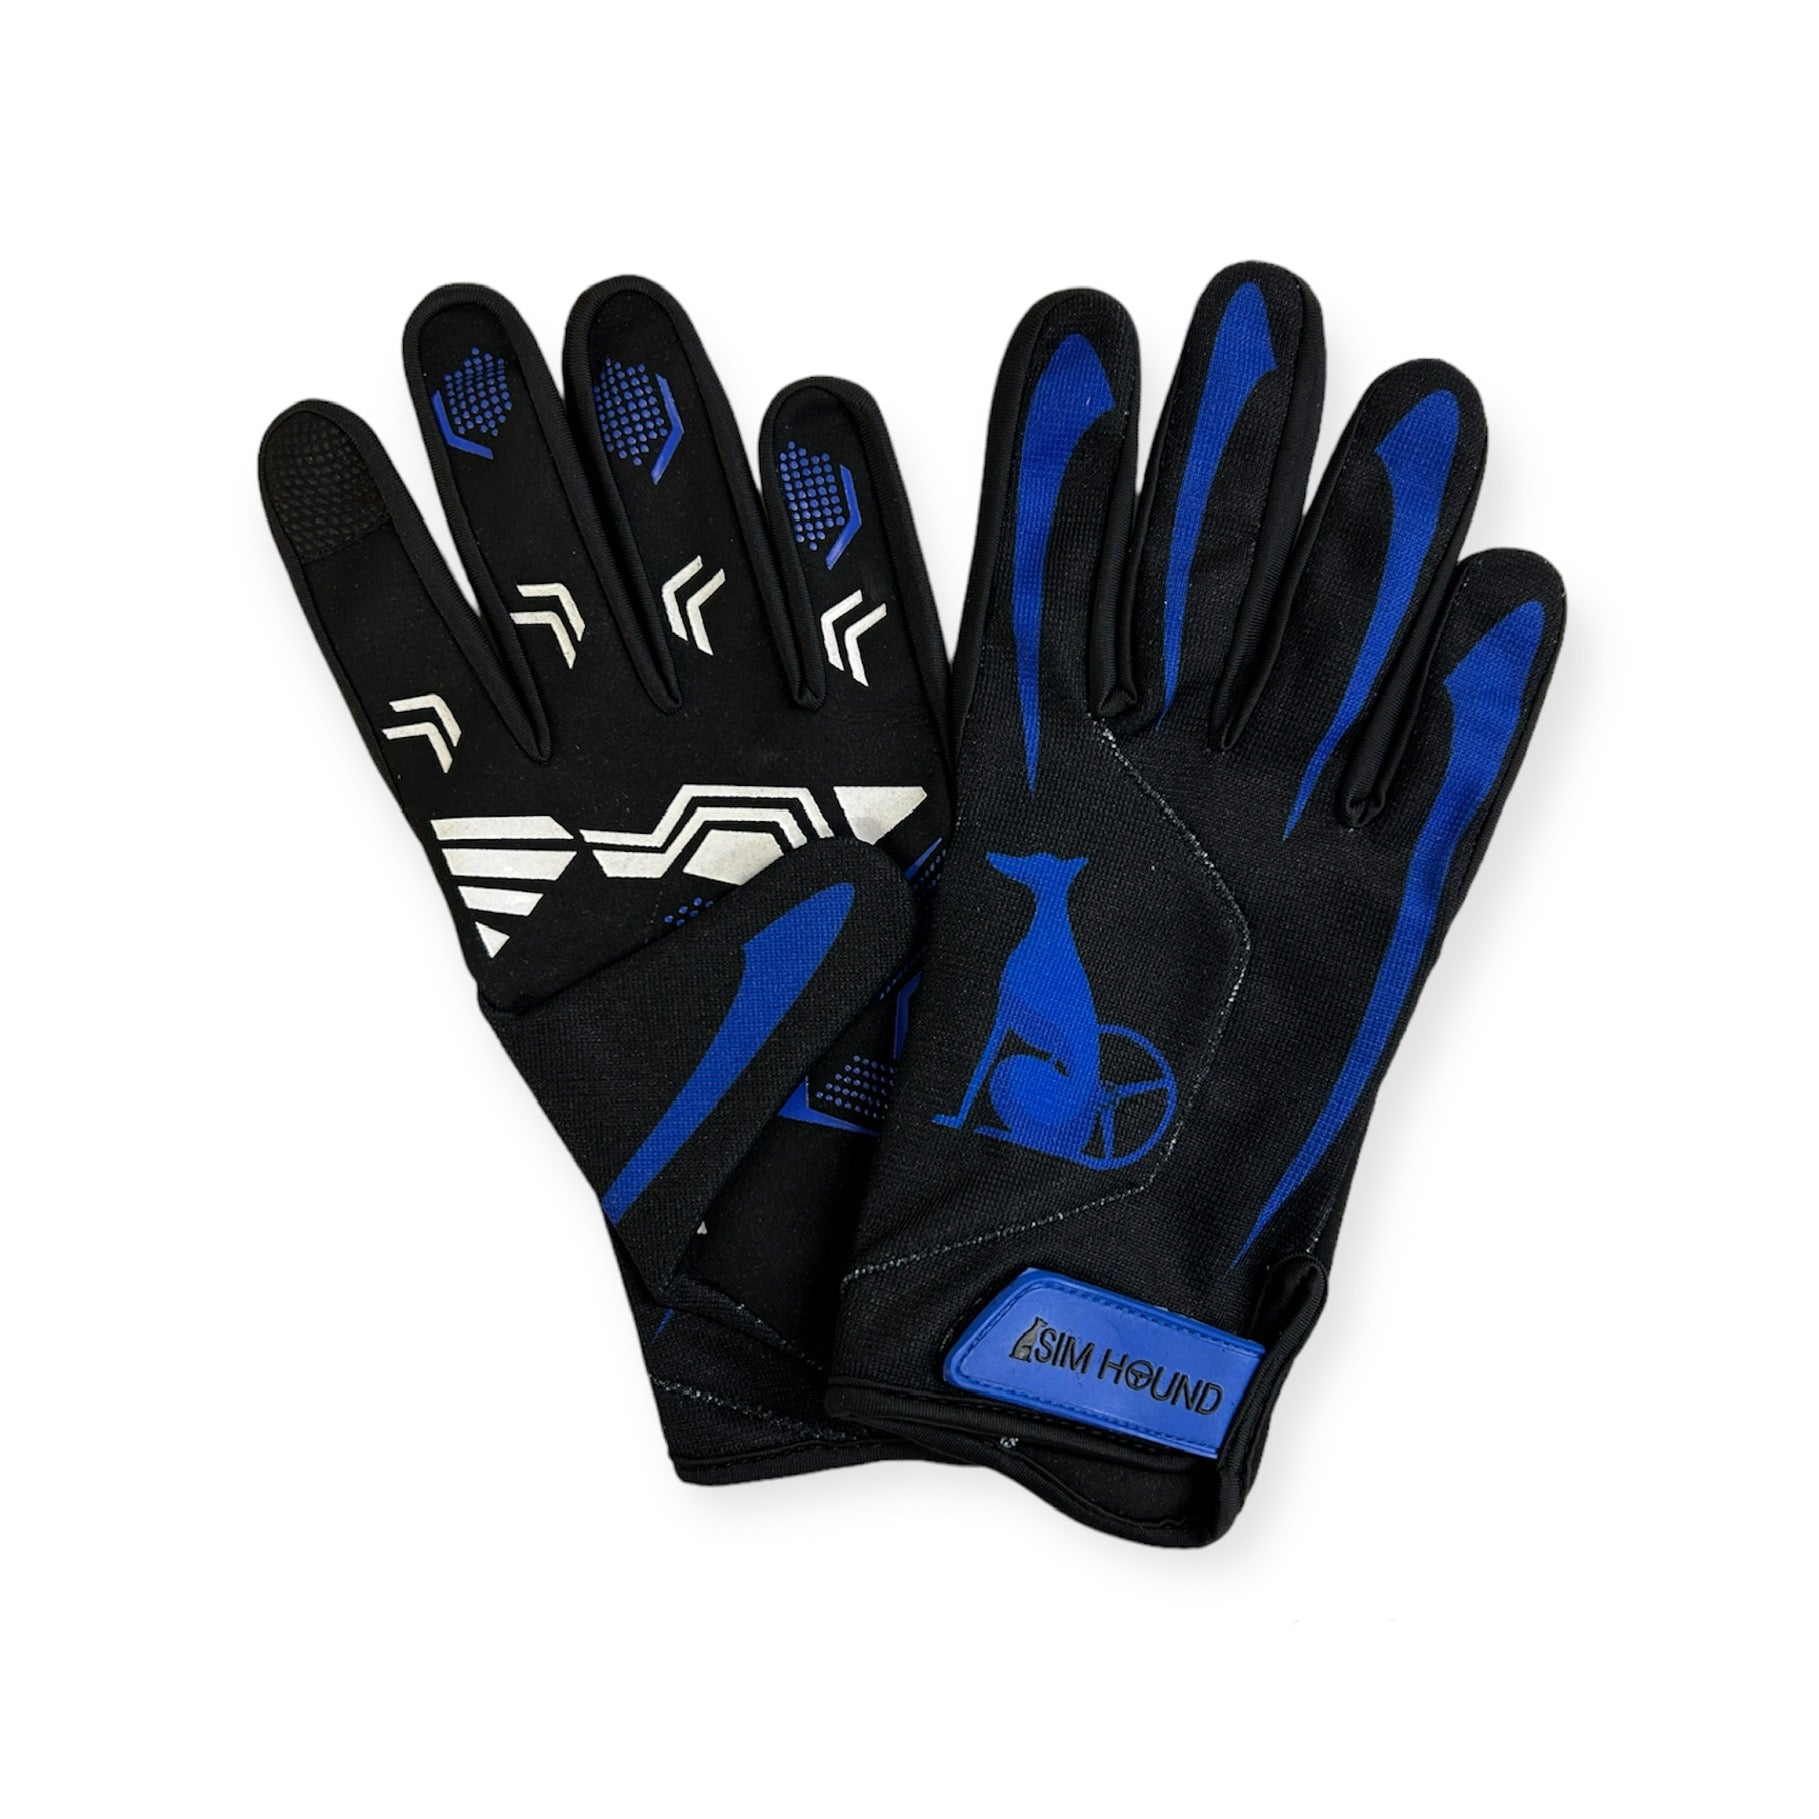 Sim Hound Gloves - Black & Blue *Limited Edition*